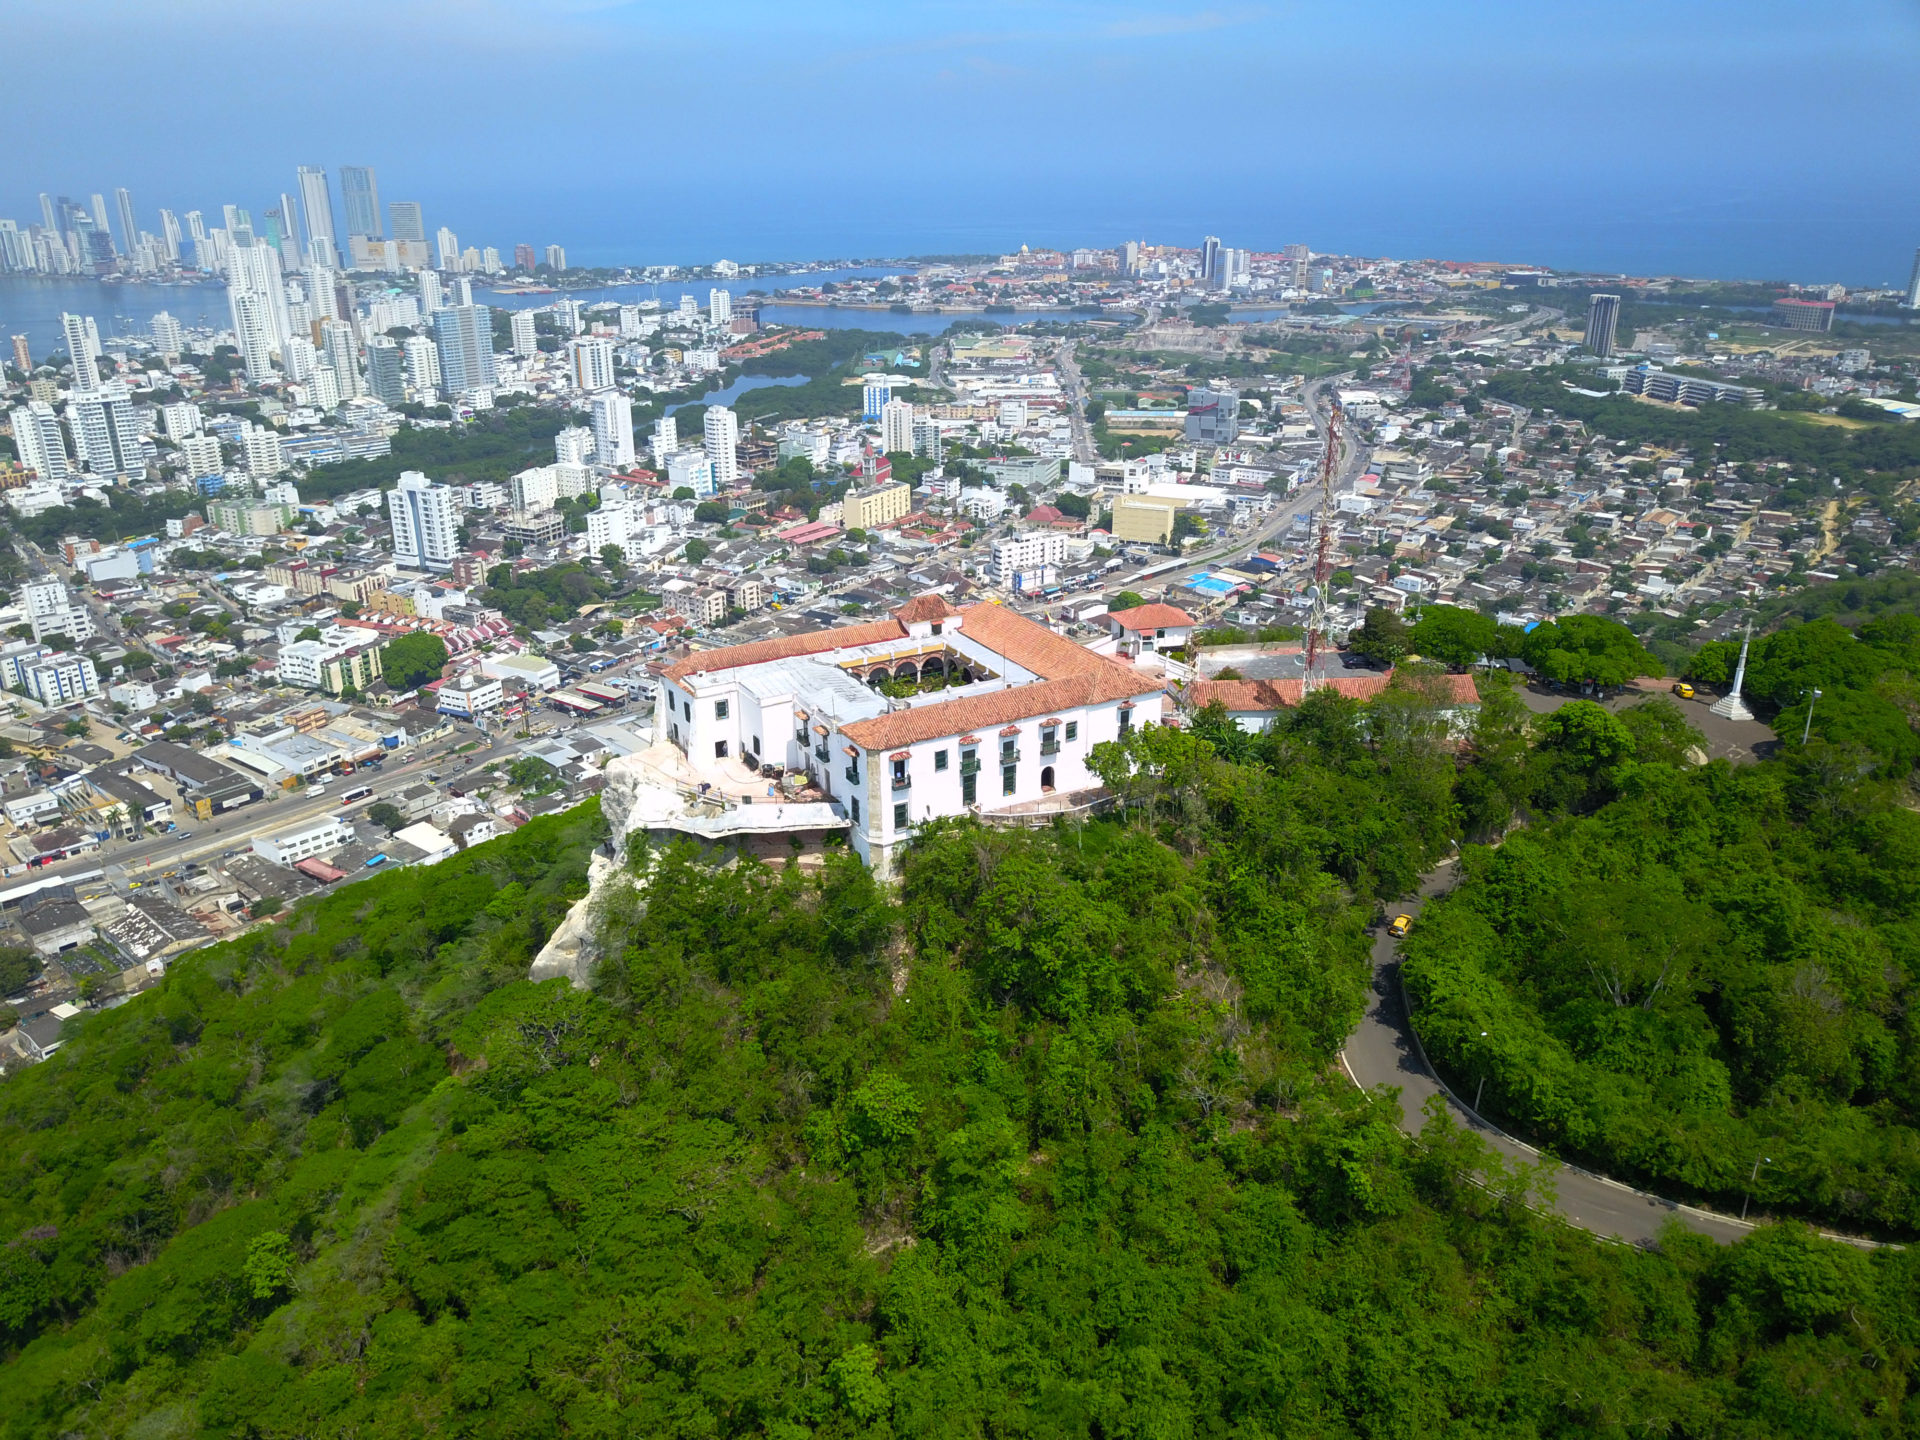 Aerial view of Cerro de la Popa and the bay of Cartagena